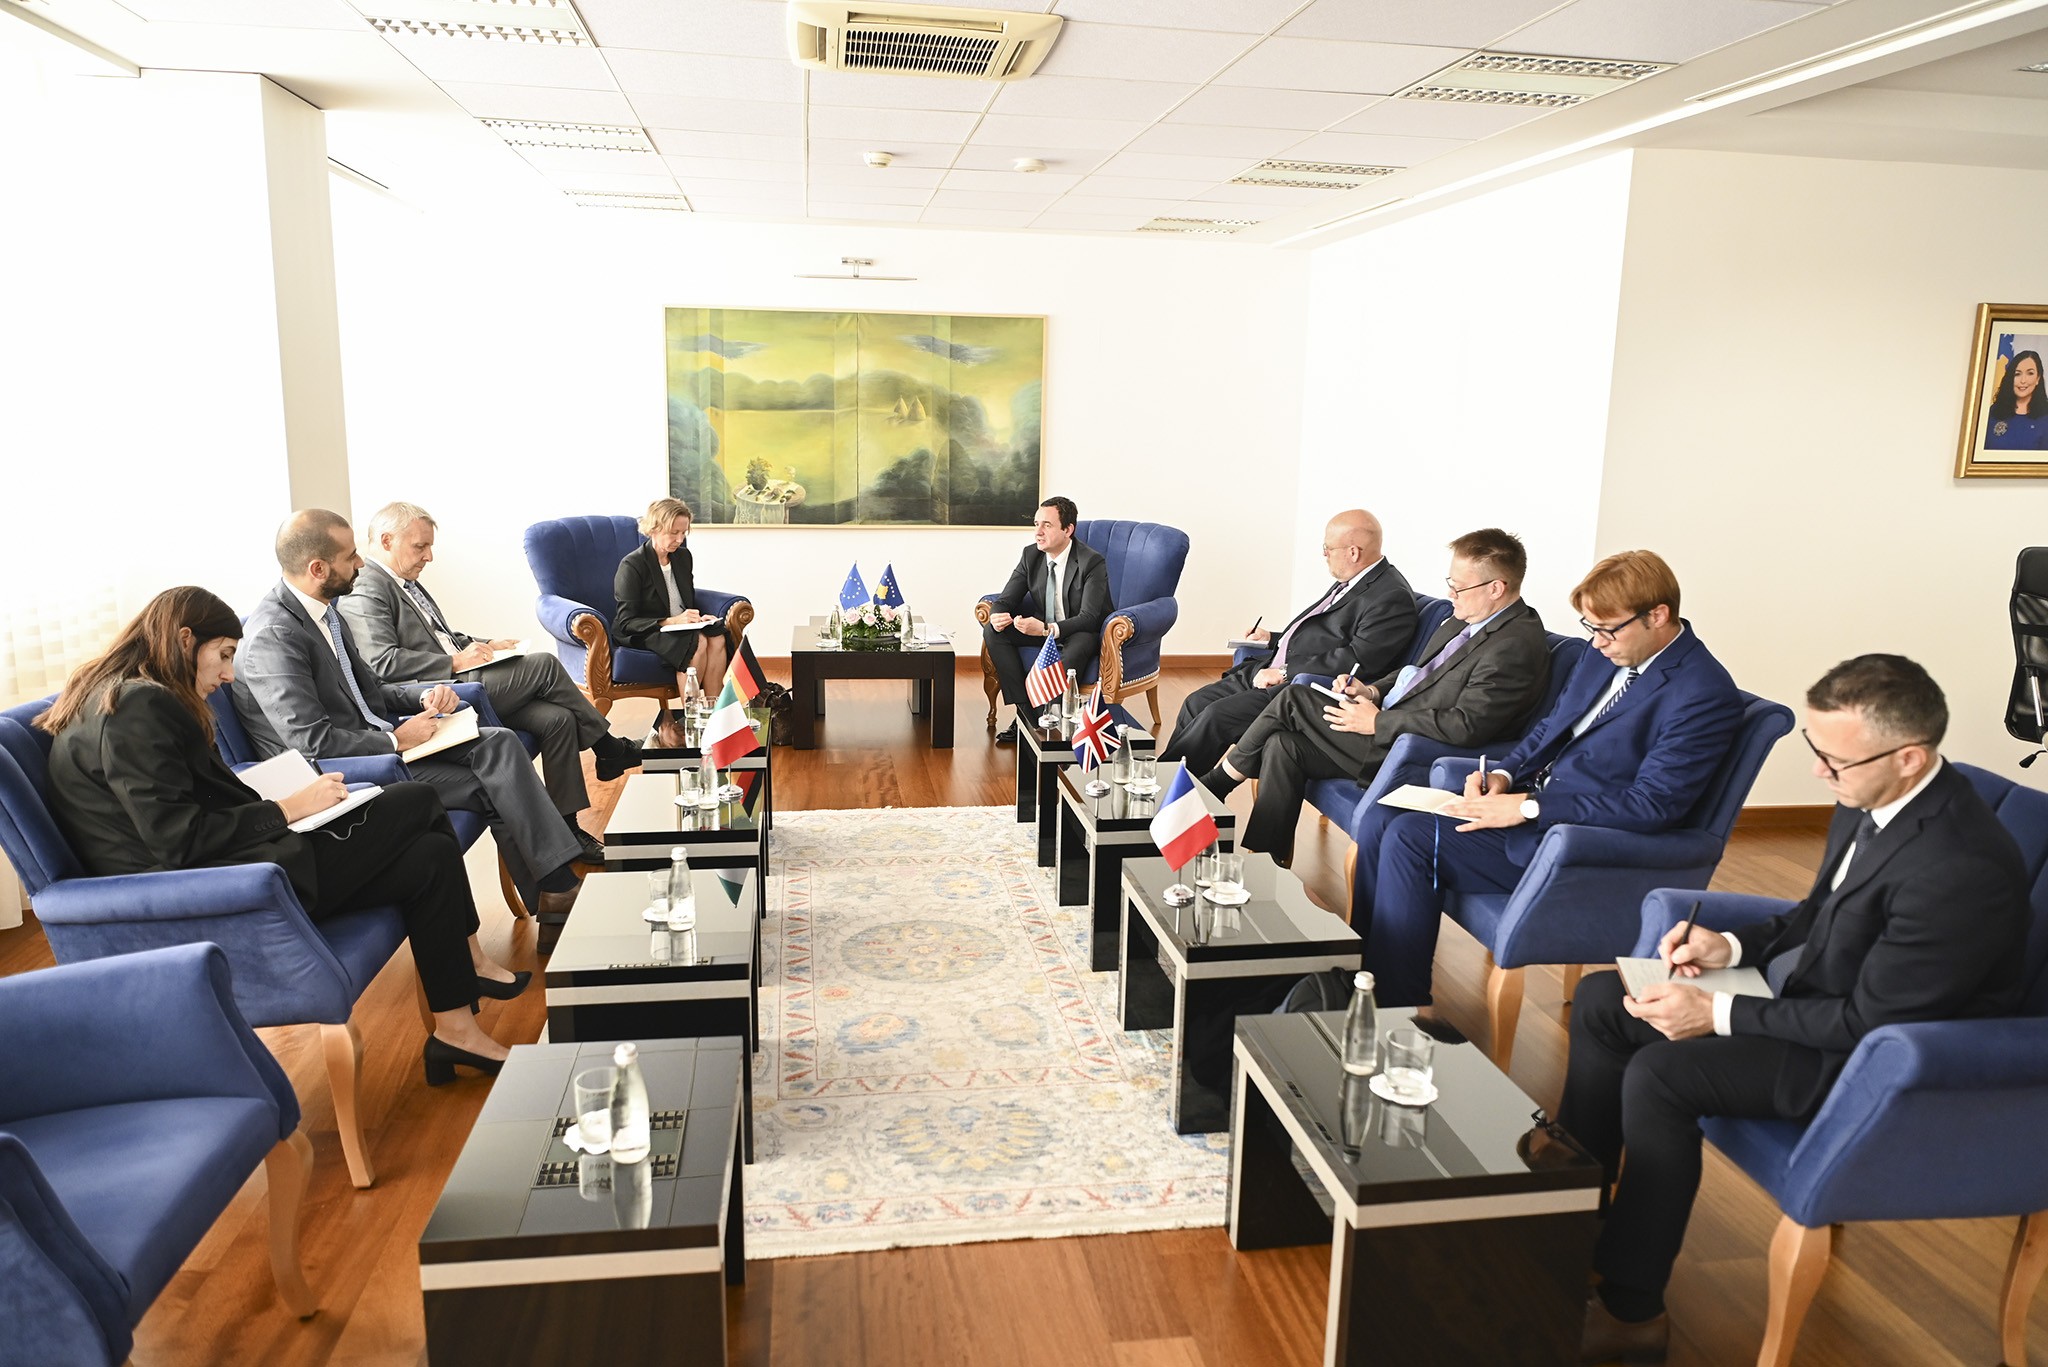  Kryeministri Kurti takoi ambasadorët e QUINT-it dhe Shefen e Zyrës së BE-së  